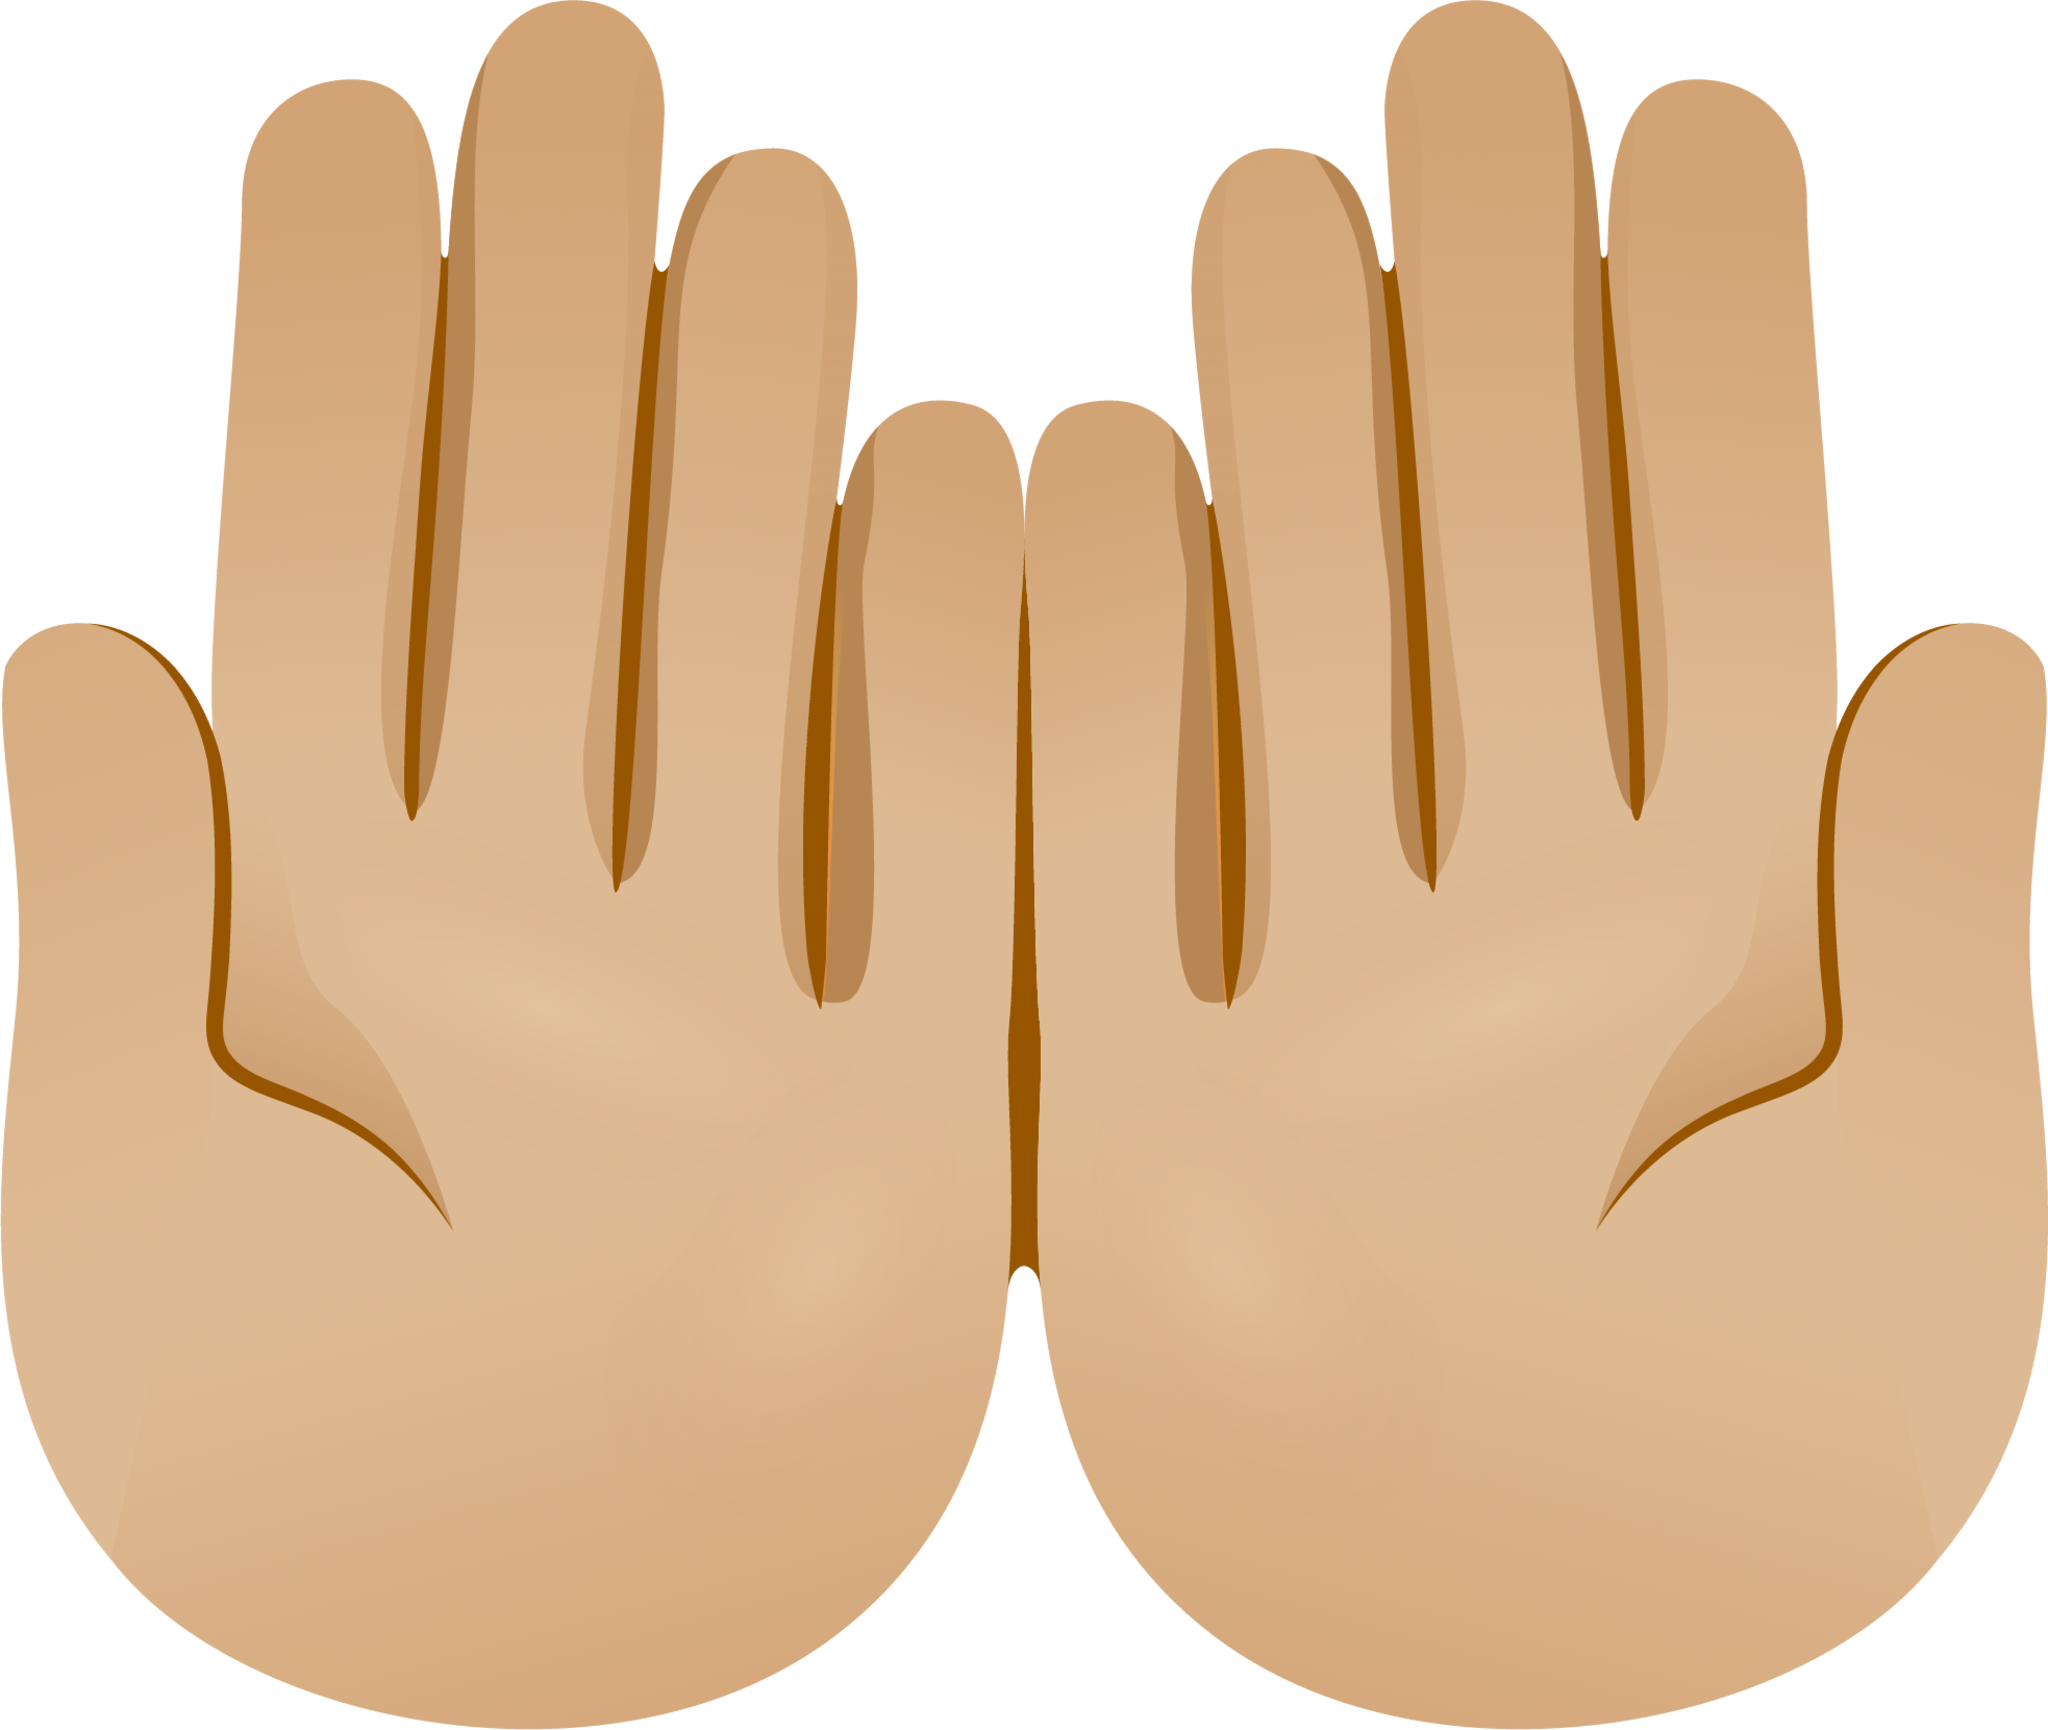 Palms up together skin 2 emoji emoji